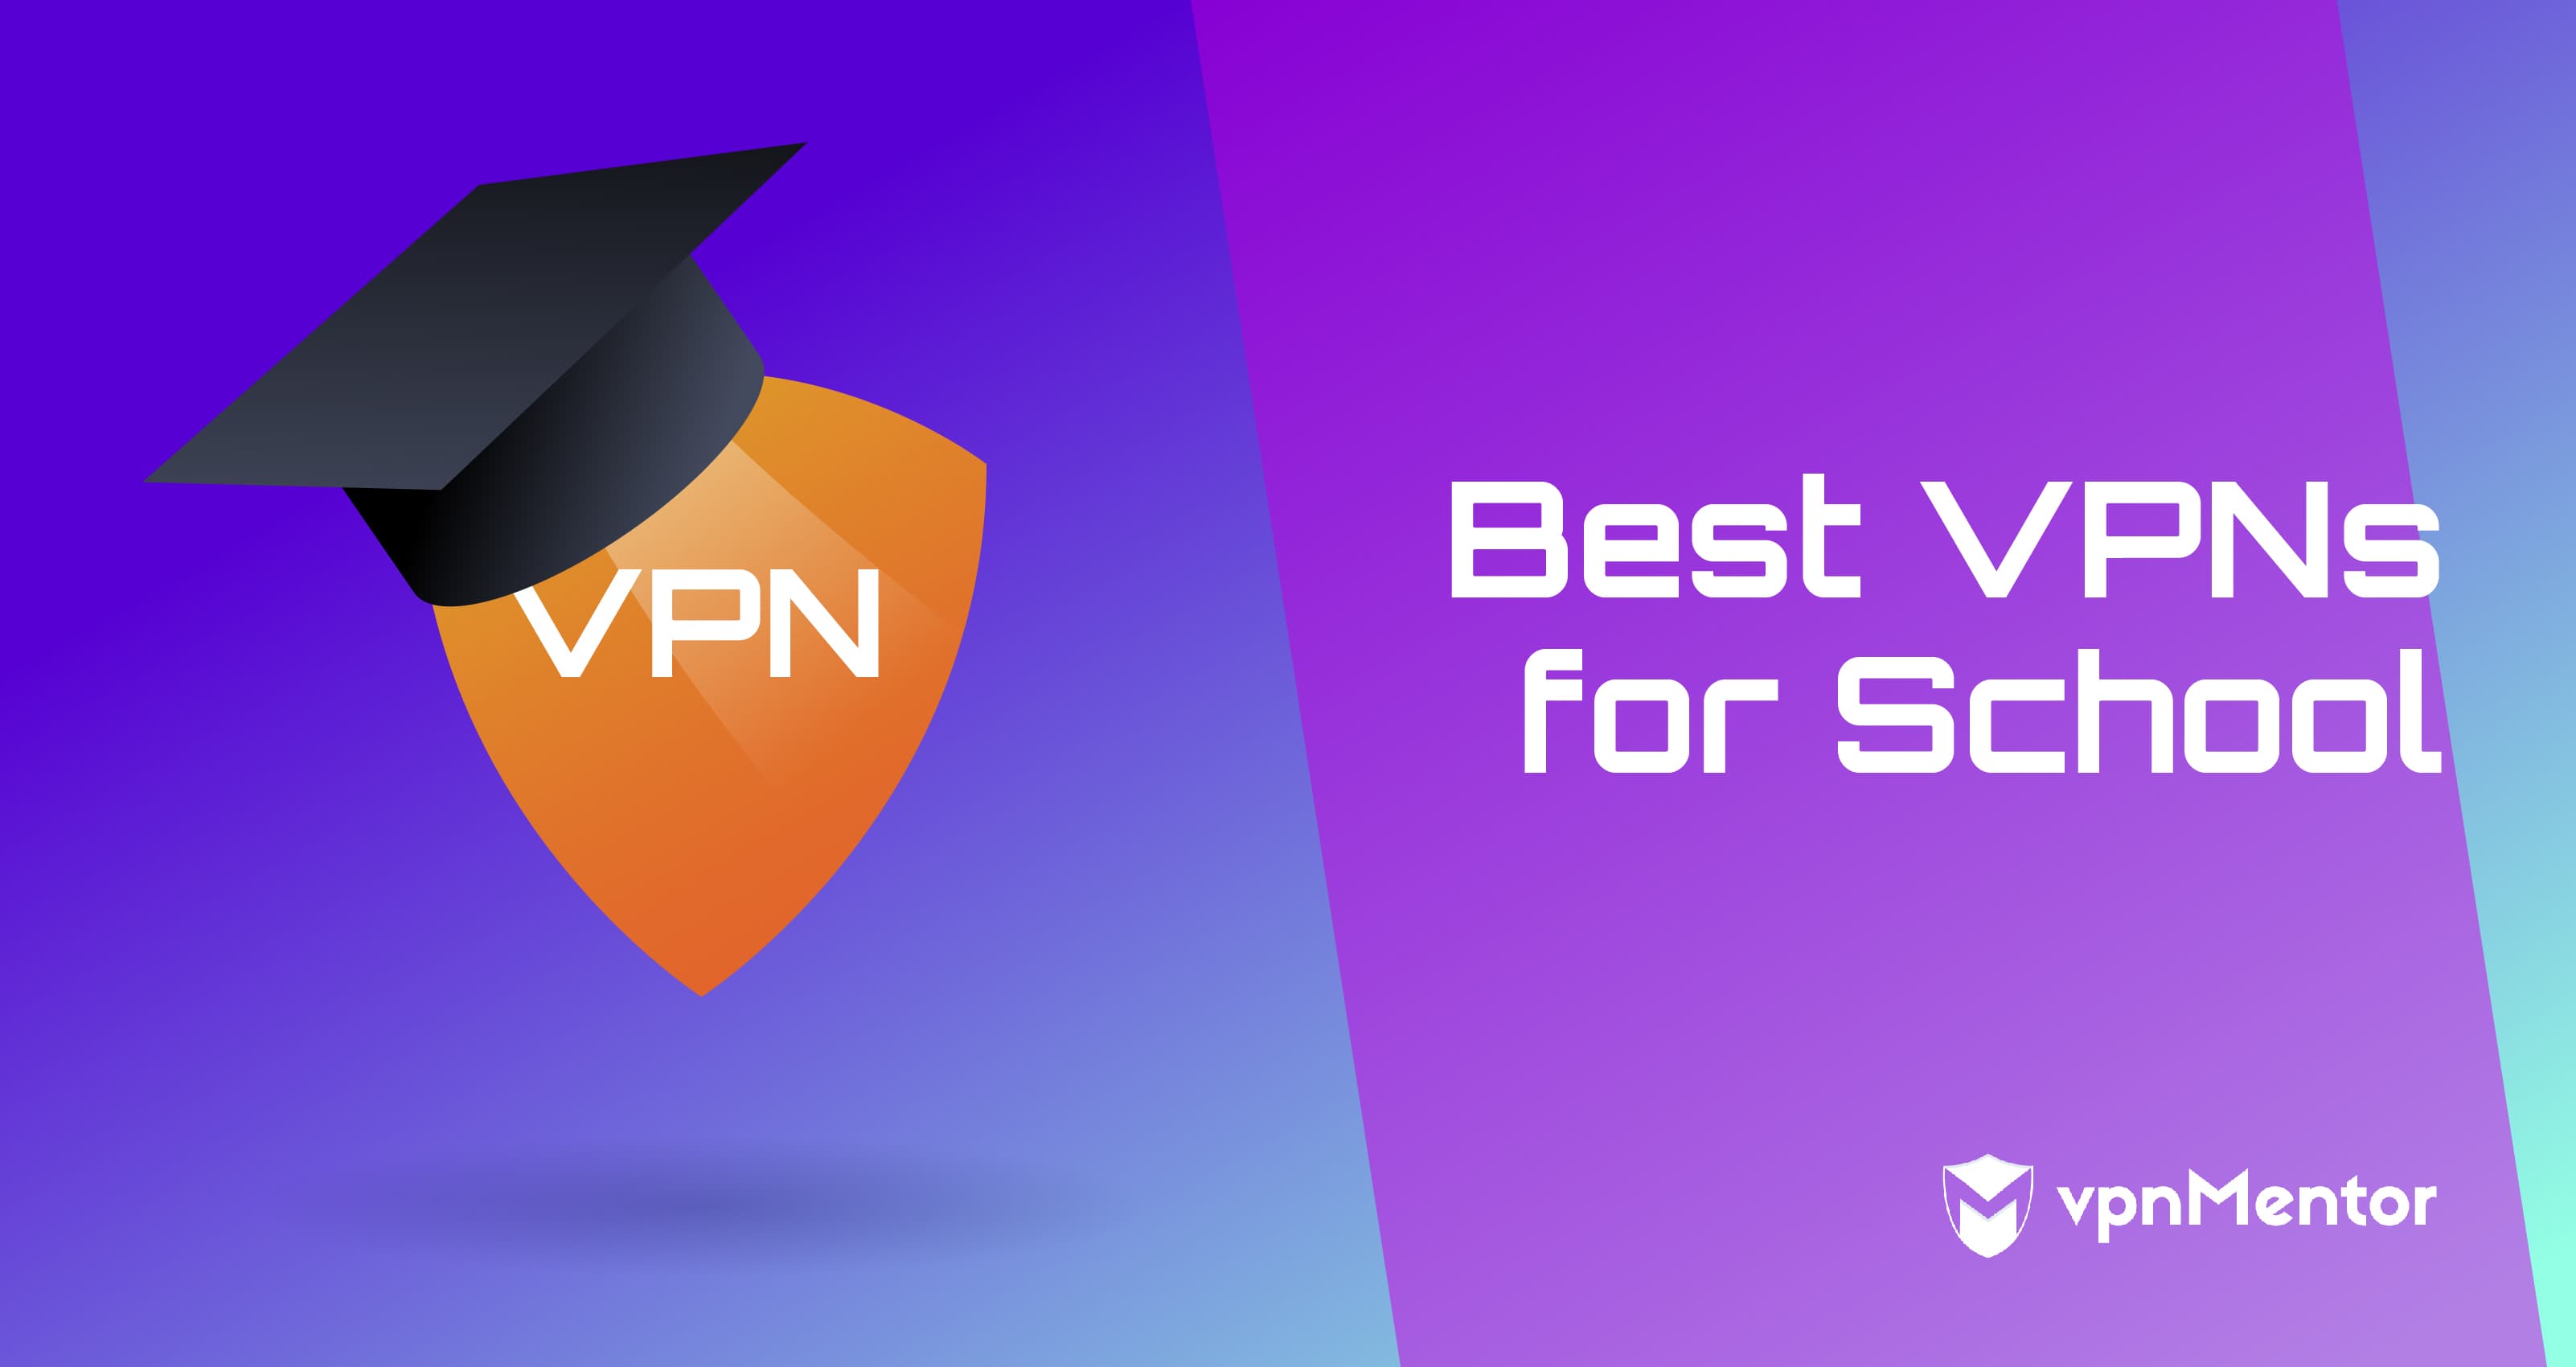 The Best VPNs for School - Unblock websites on your school's WiFi | 4 AtlasVPN - Best Budget School VPN Option